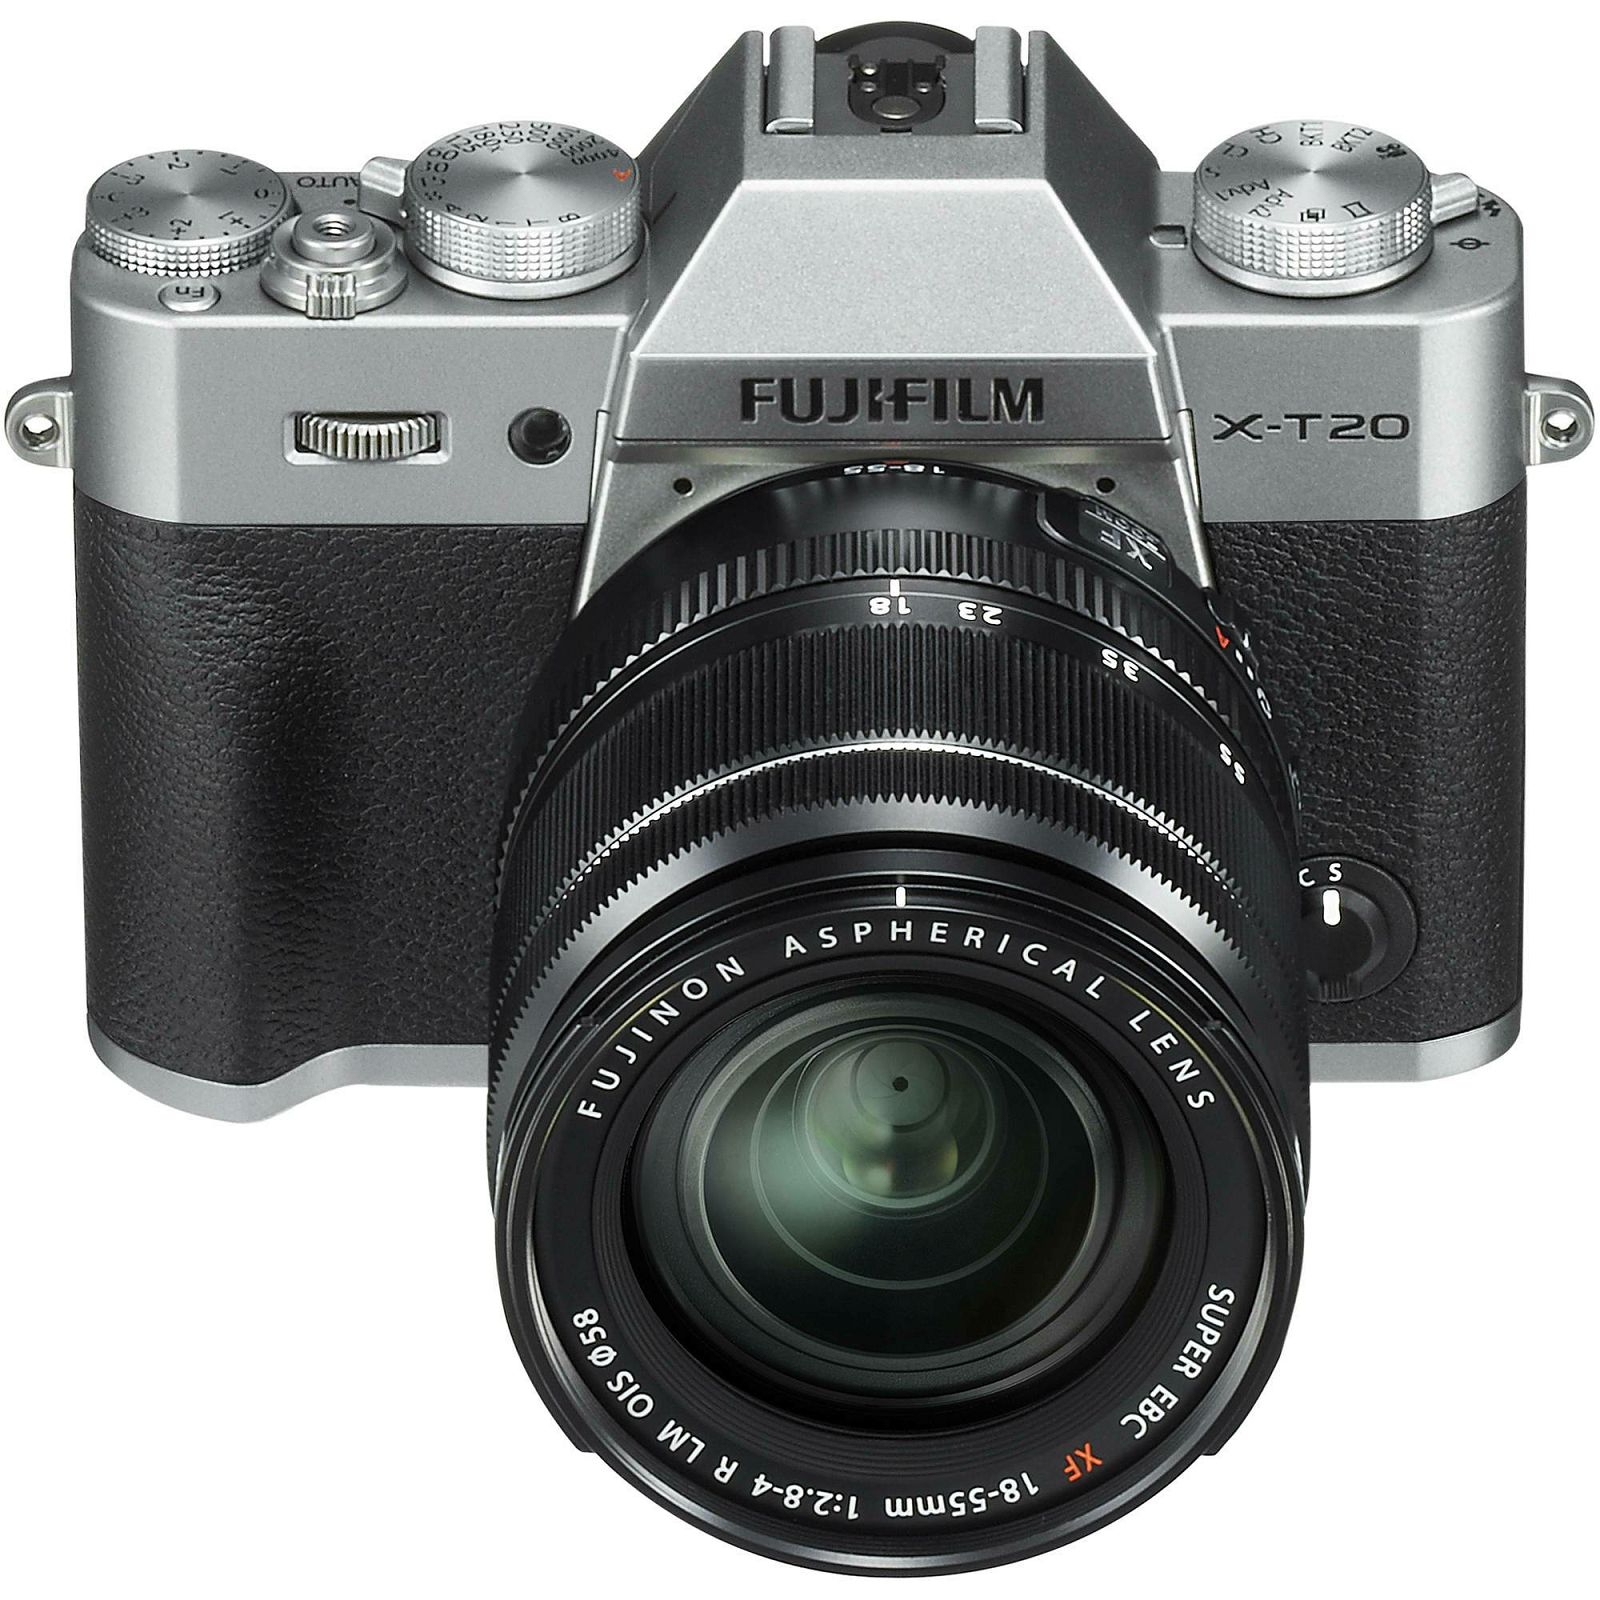 Fujifilm X-T20 + XF 18-55 f2.8-4 R LM OIS Silver srebreni digitalni mirrorless fotoaparat s objektivom 18-55mm Fuji